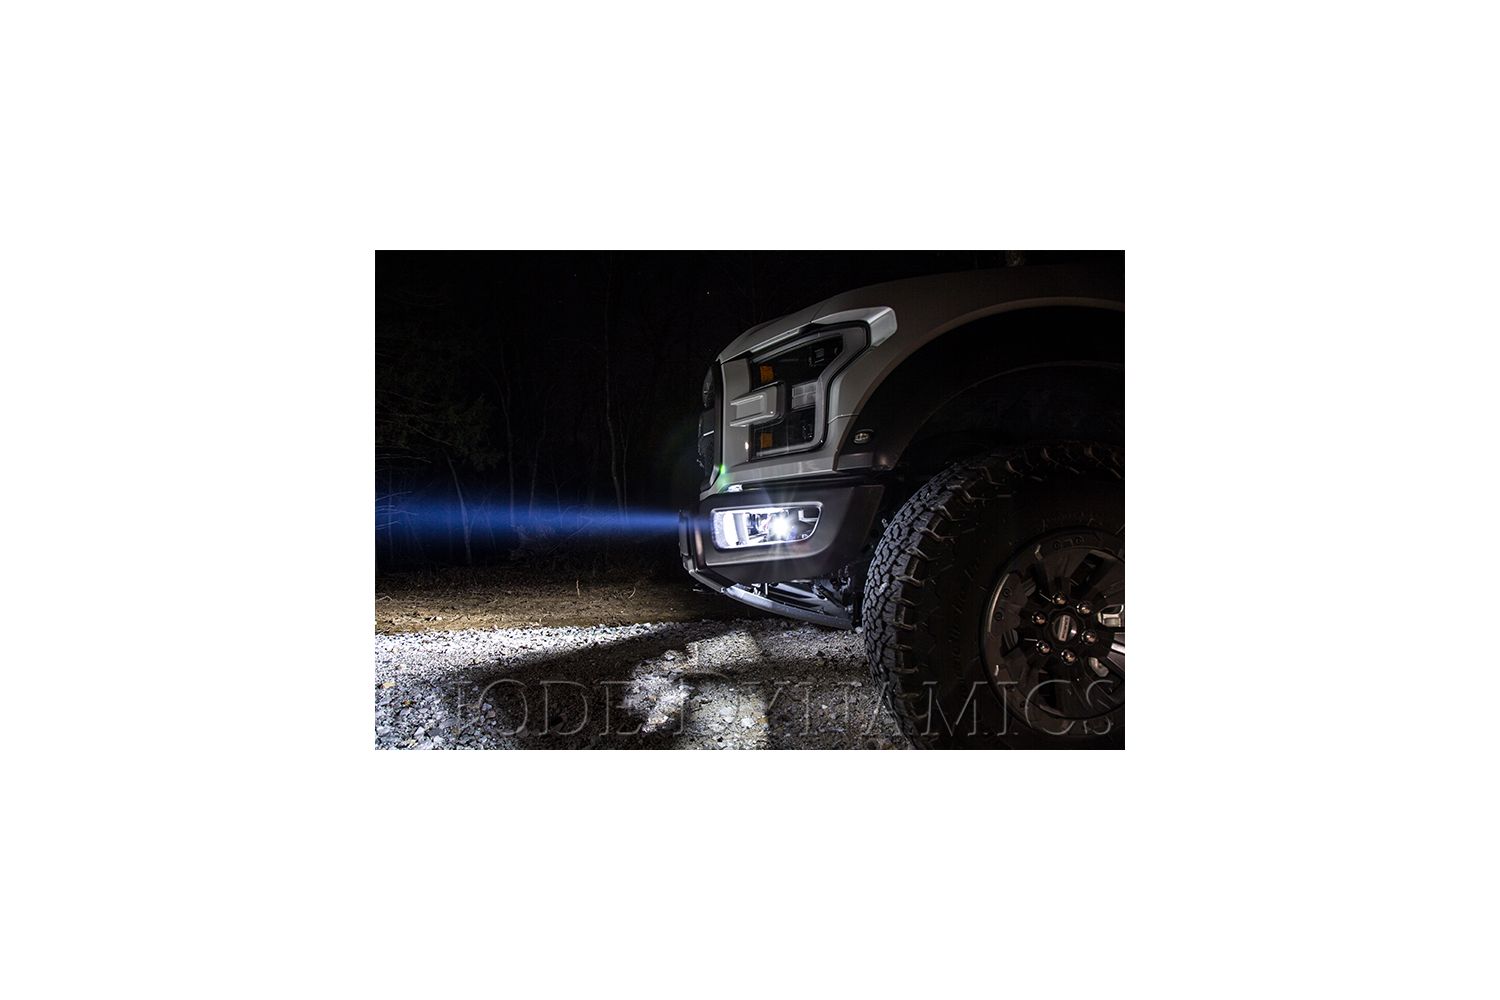 NEW! Ford Raptor LED Fog Lightbar Kits